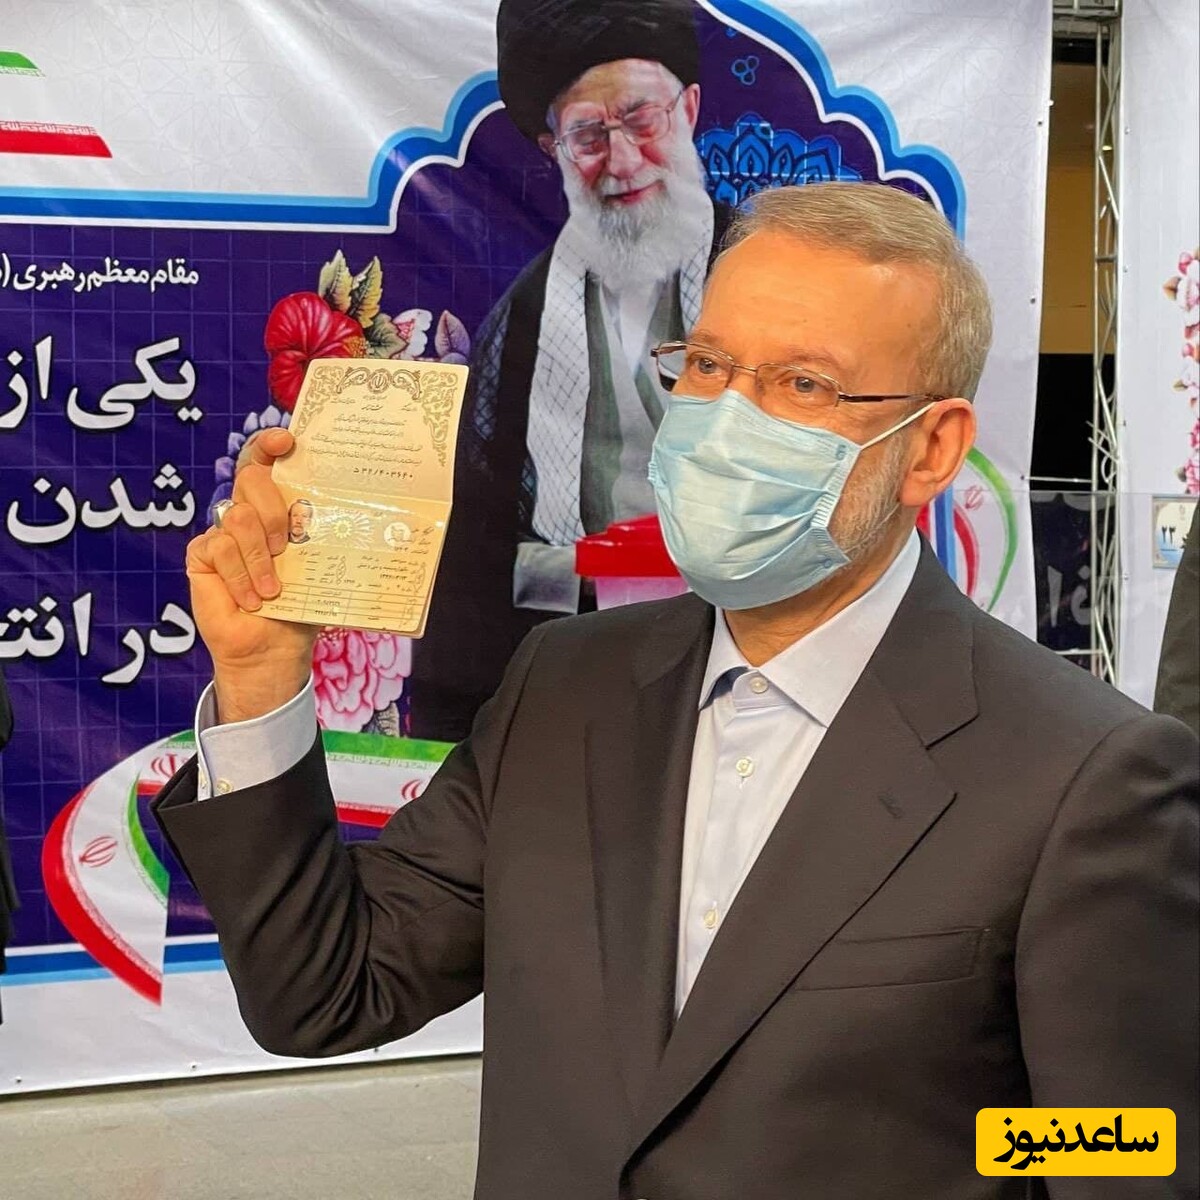 جلسه علی لاریجانی با رهبر انقلاب برای حضور در انتخابات صحت دارد؟